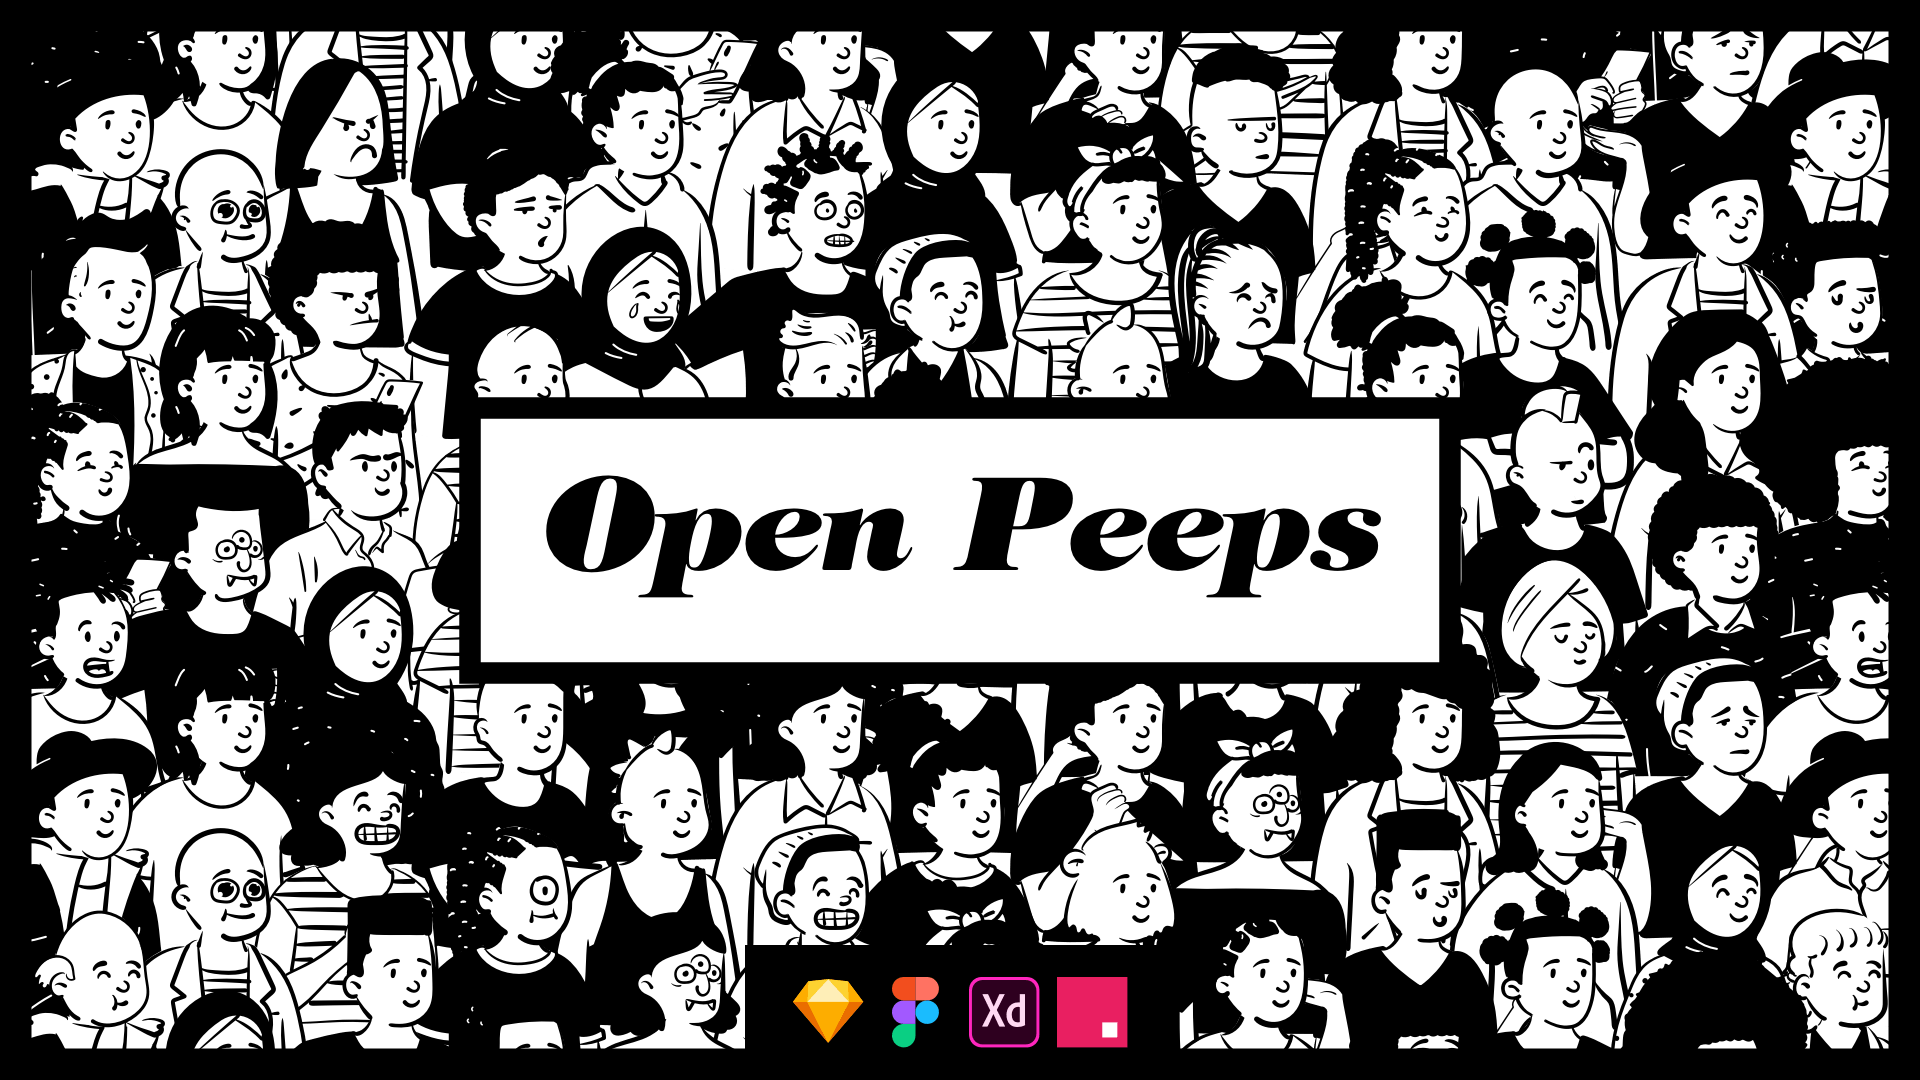 Open Peeps media 2